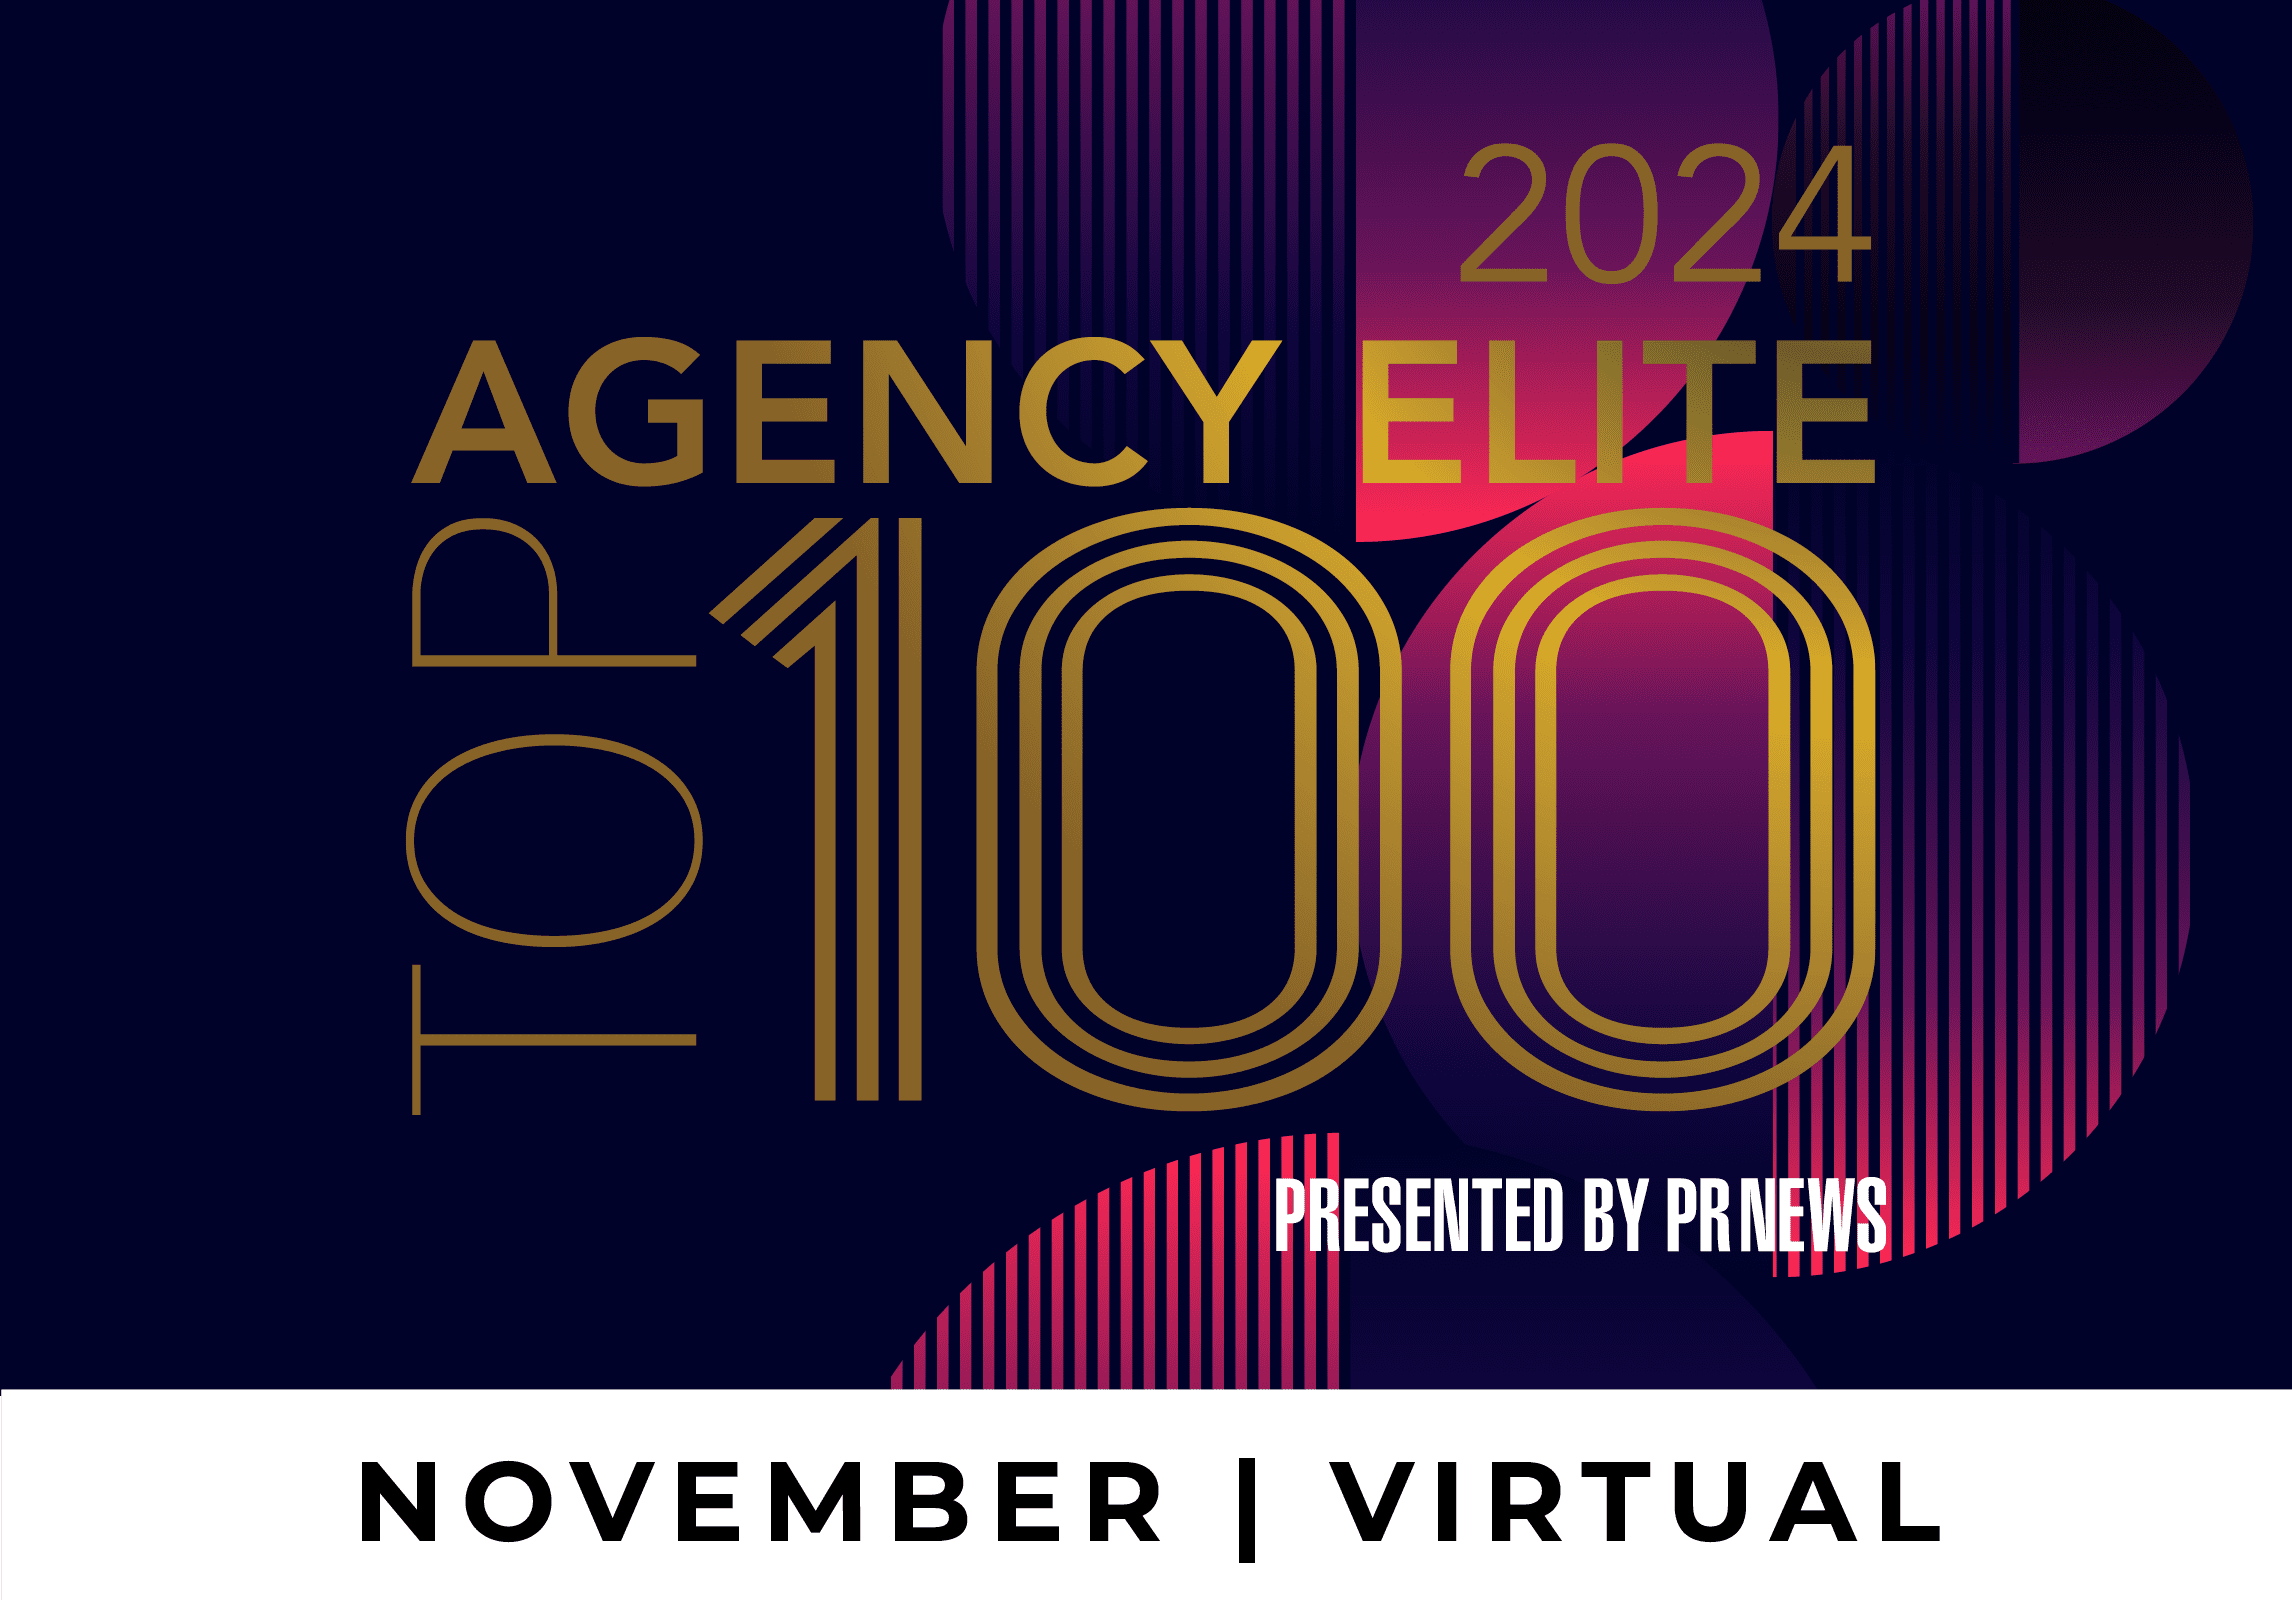 Agency Elite Top 100